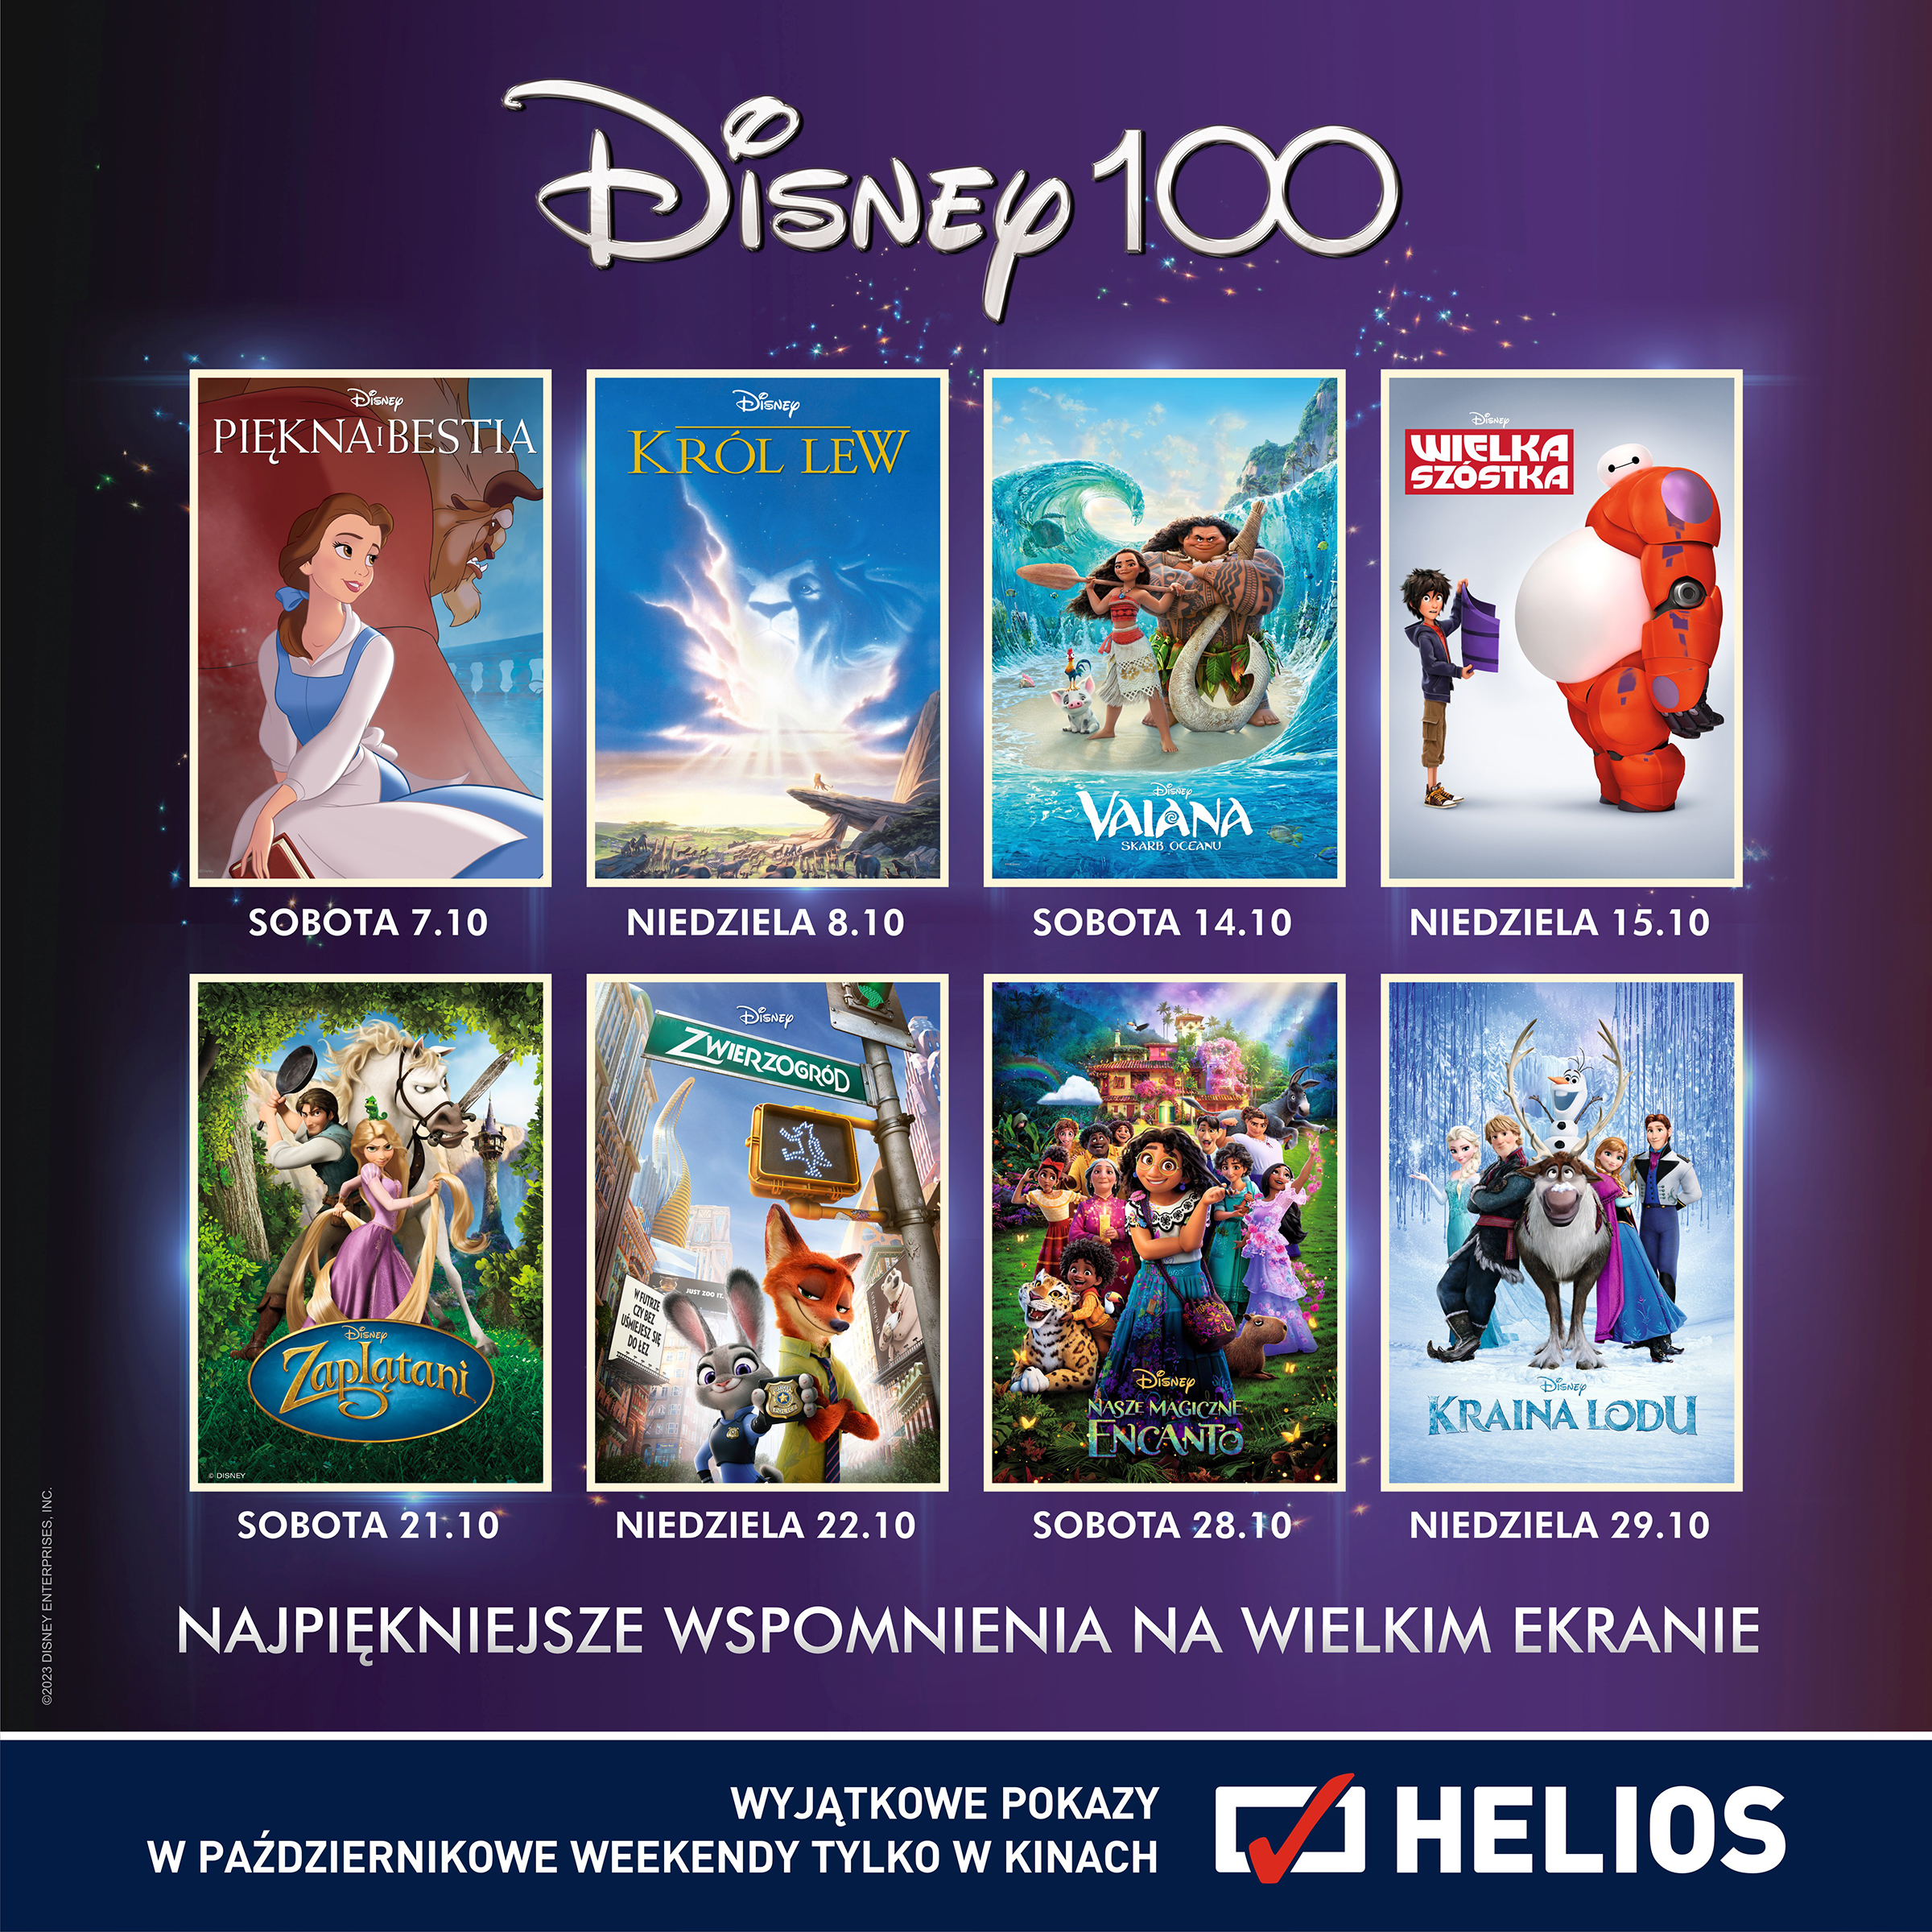 Klasyki wracają do kin z okazji 100-lecia Disneya!